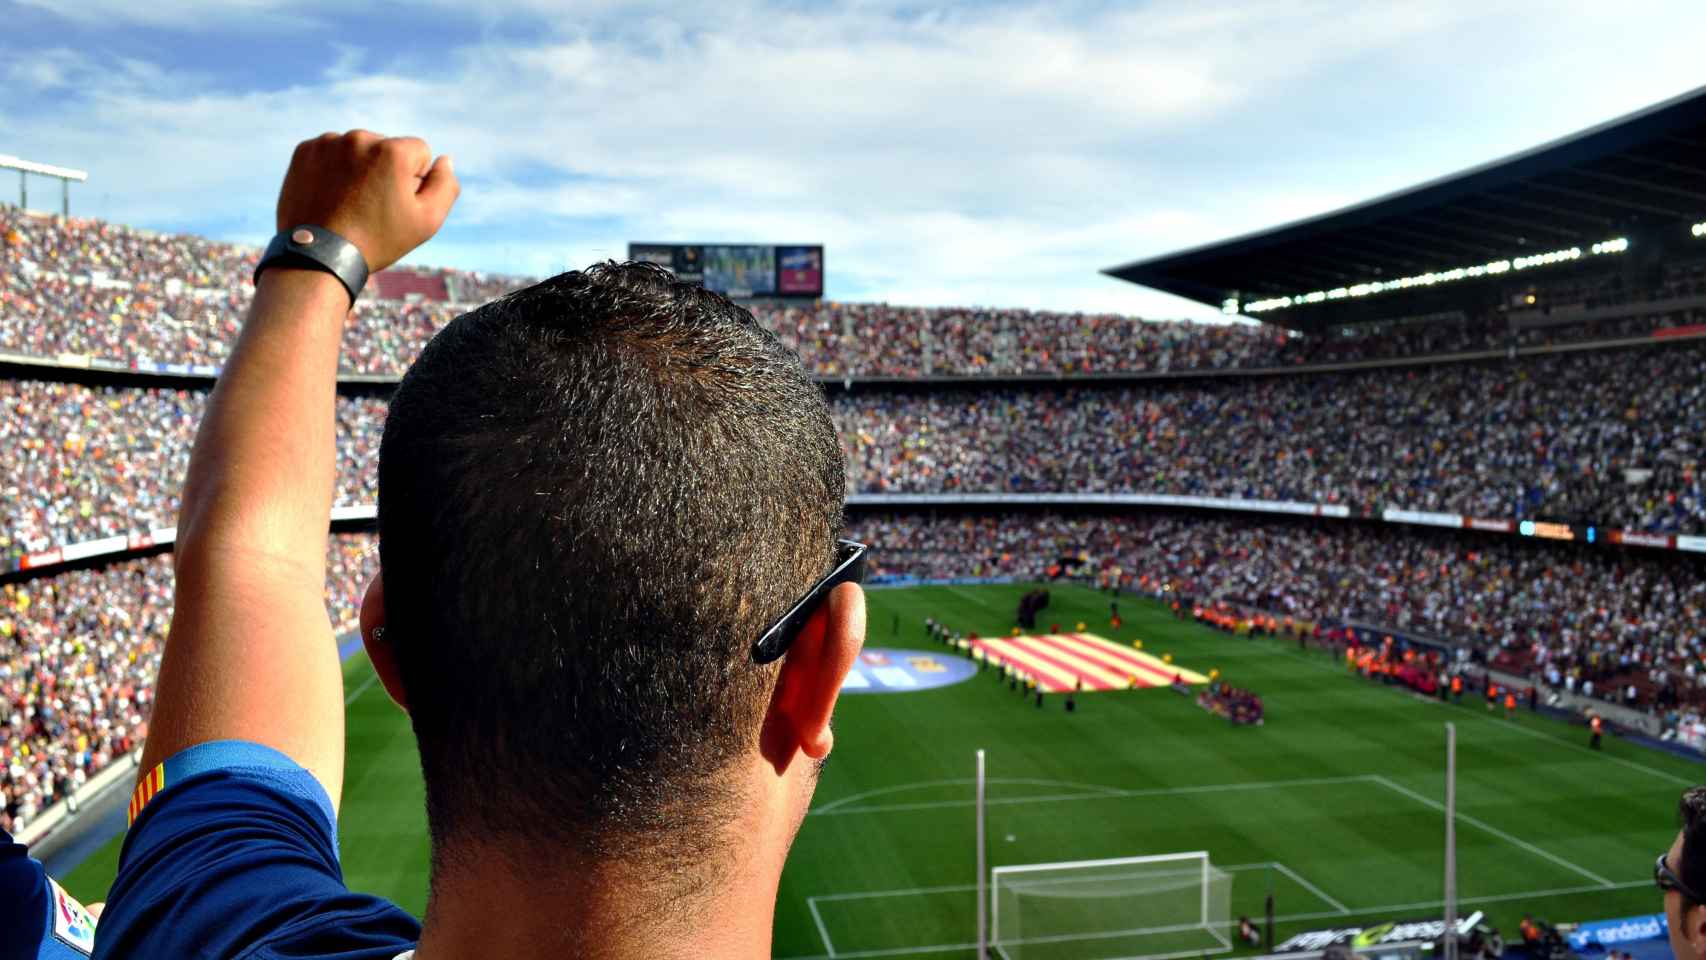 El Camp Nou, un día de partido